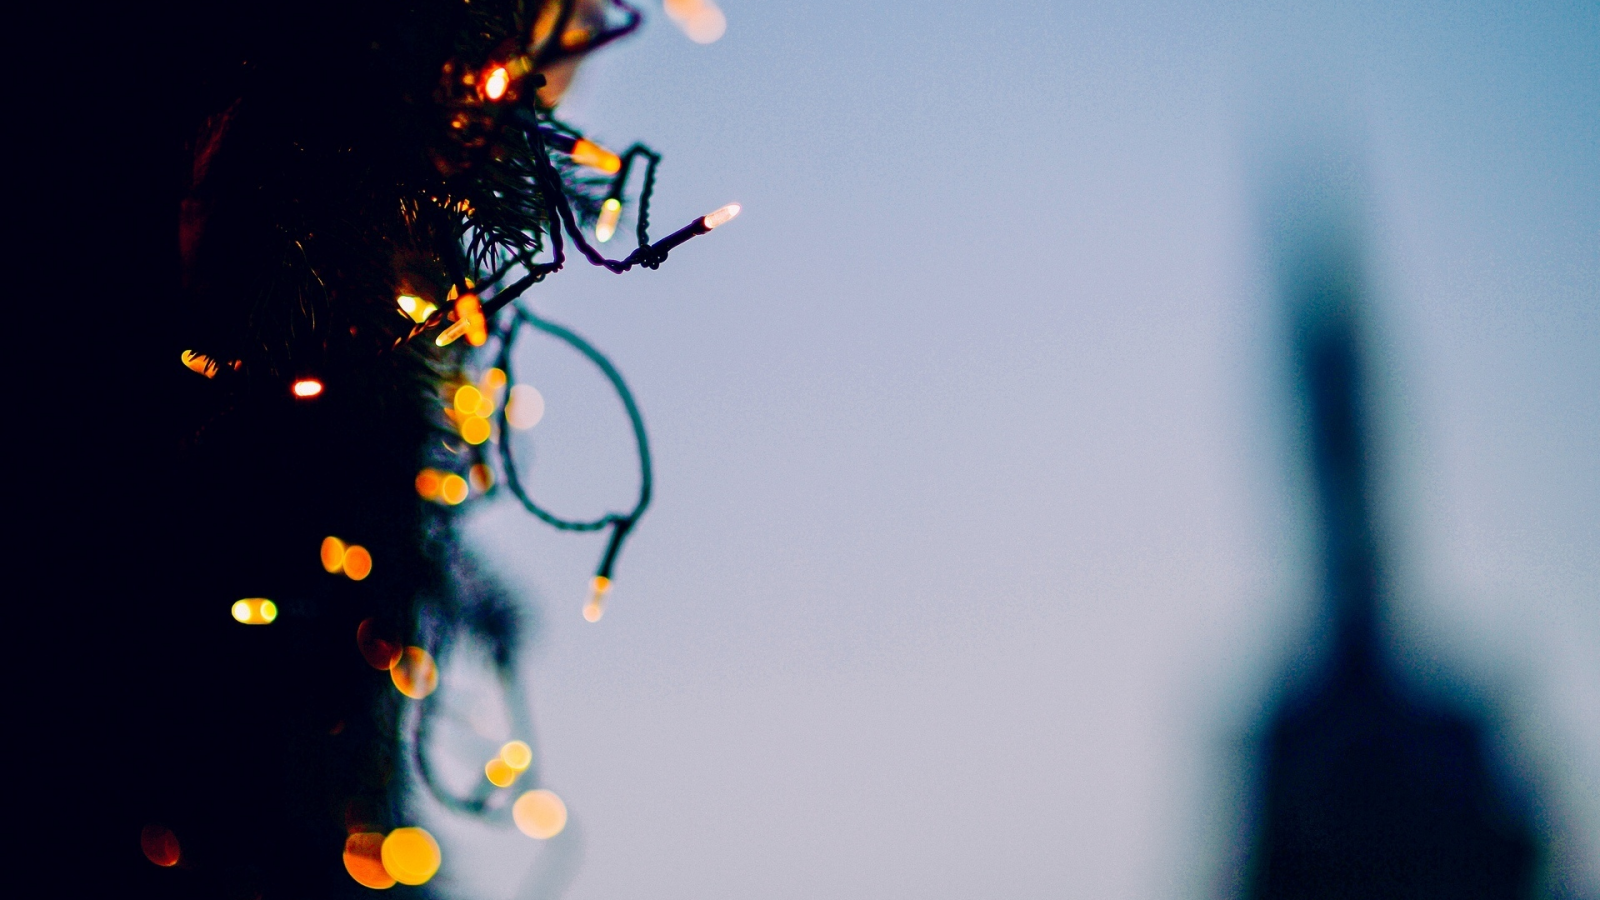 гирлянда, новый год, елка, дерево, праздники, украшение